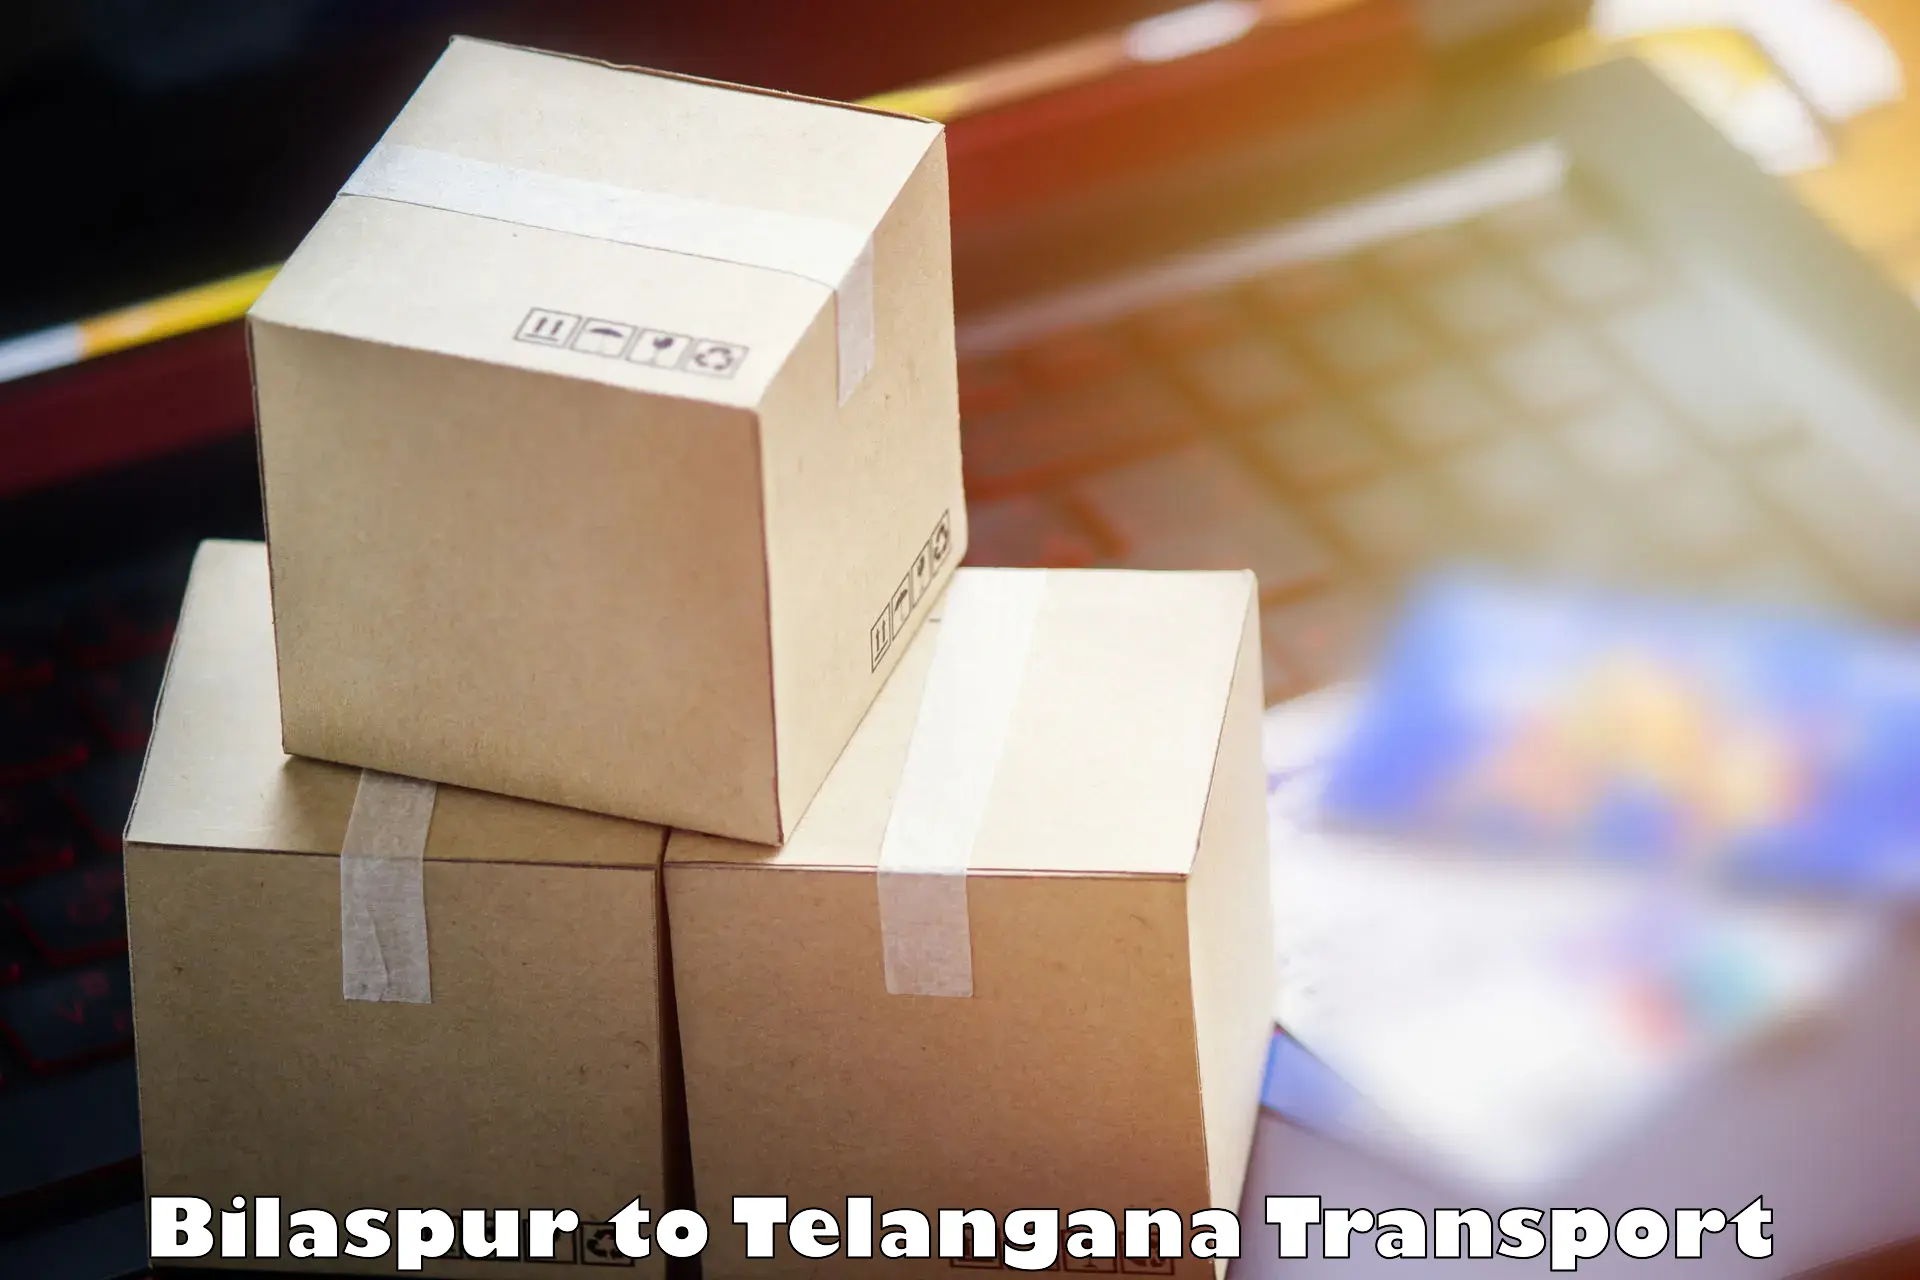 Furniture transport service Bilaspur to Kusumanchi